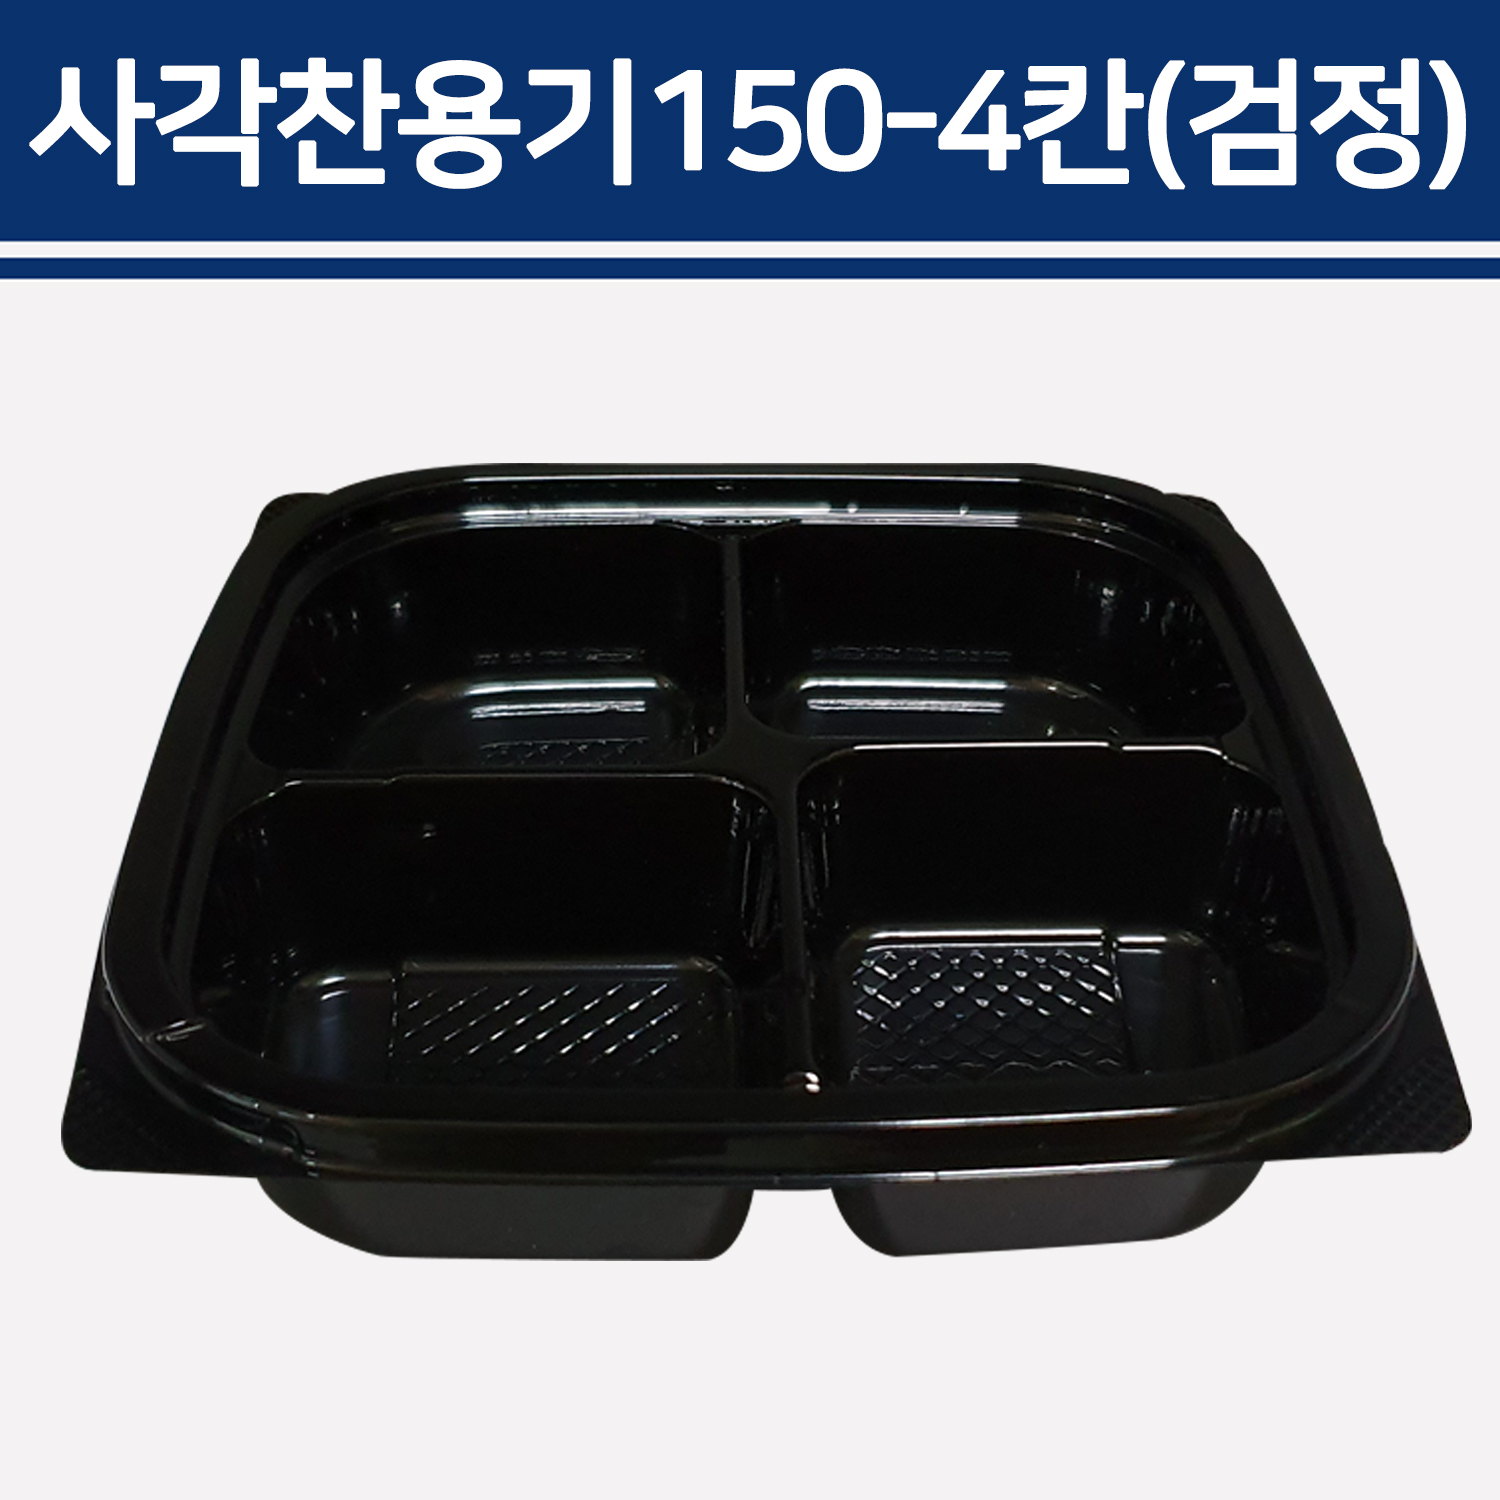 사각찬용기150-4칸(검정) / TY-150